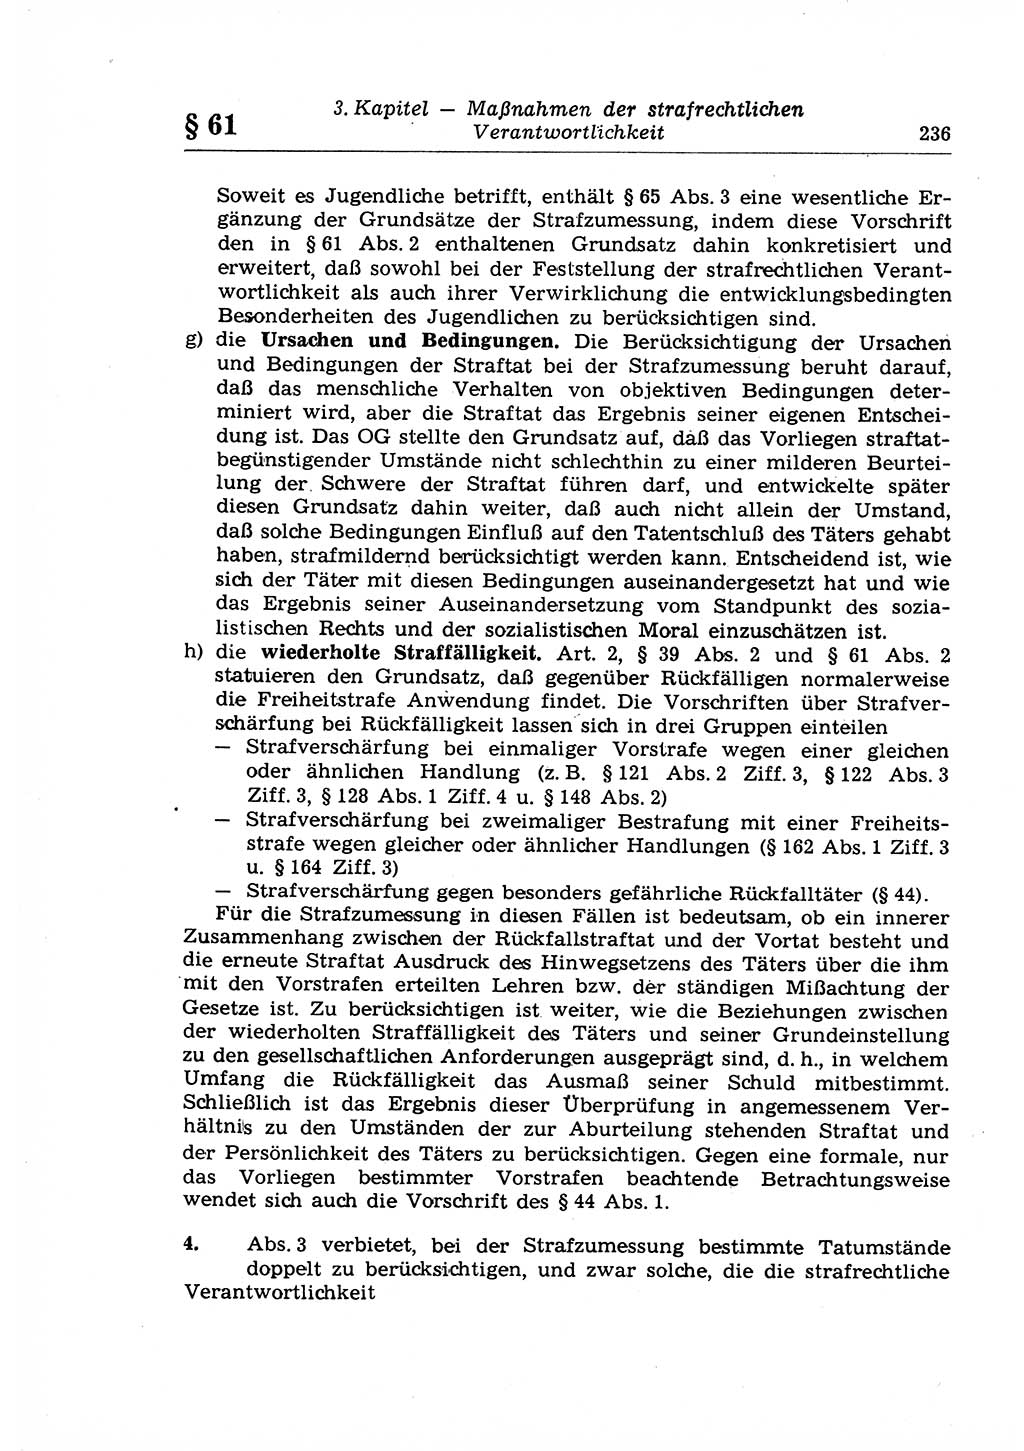 Strafrecht der Deutschen Demokratischen Republik (DDR), Lehrkommentar zum Strafgesetzbuch (StGB), Allgemeiner Teil 1969, Seite 236 (Strafr. DDR Lehrkomm. StGB AT 1969, S. 236)